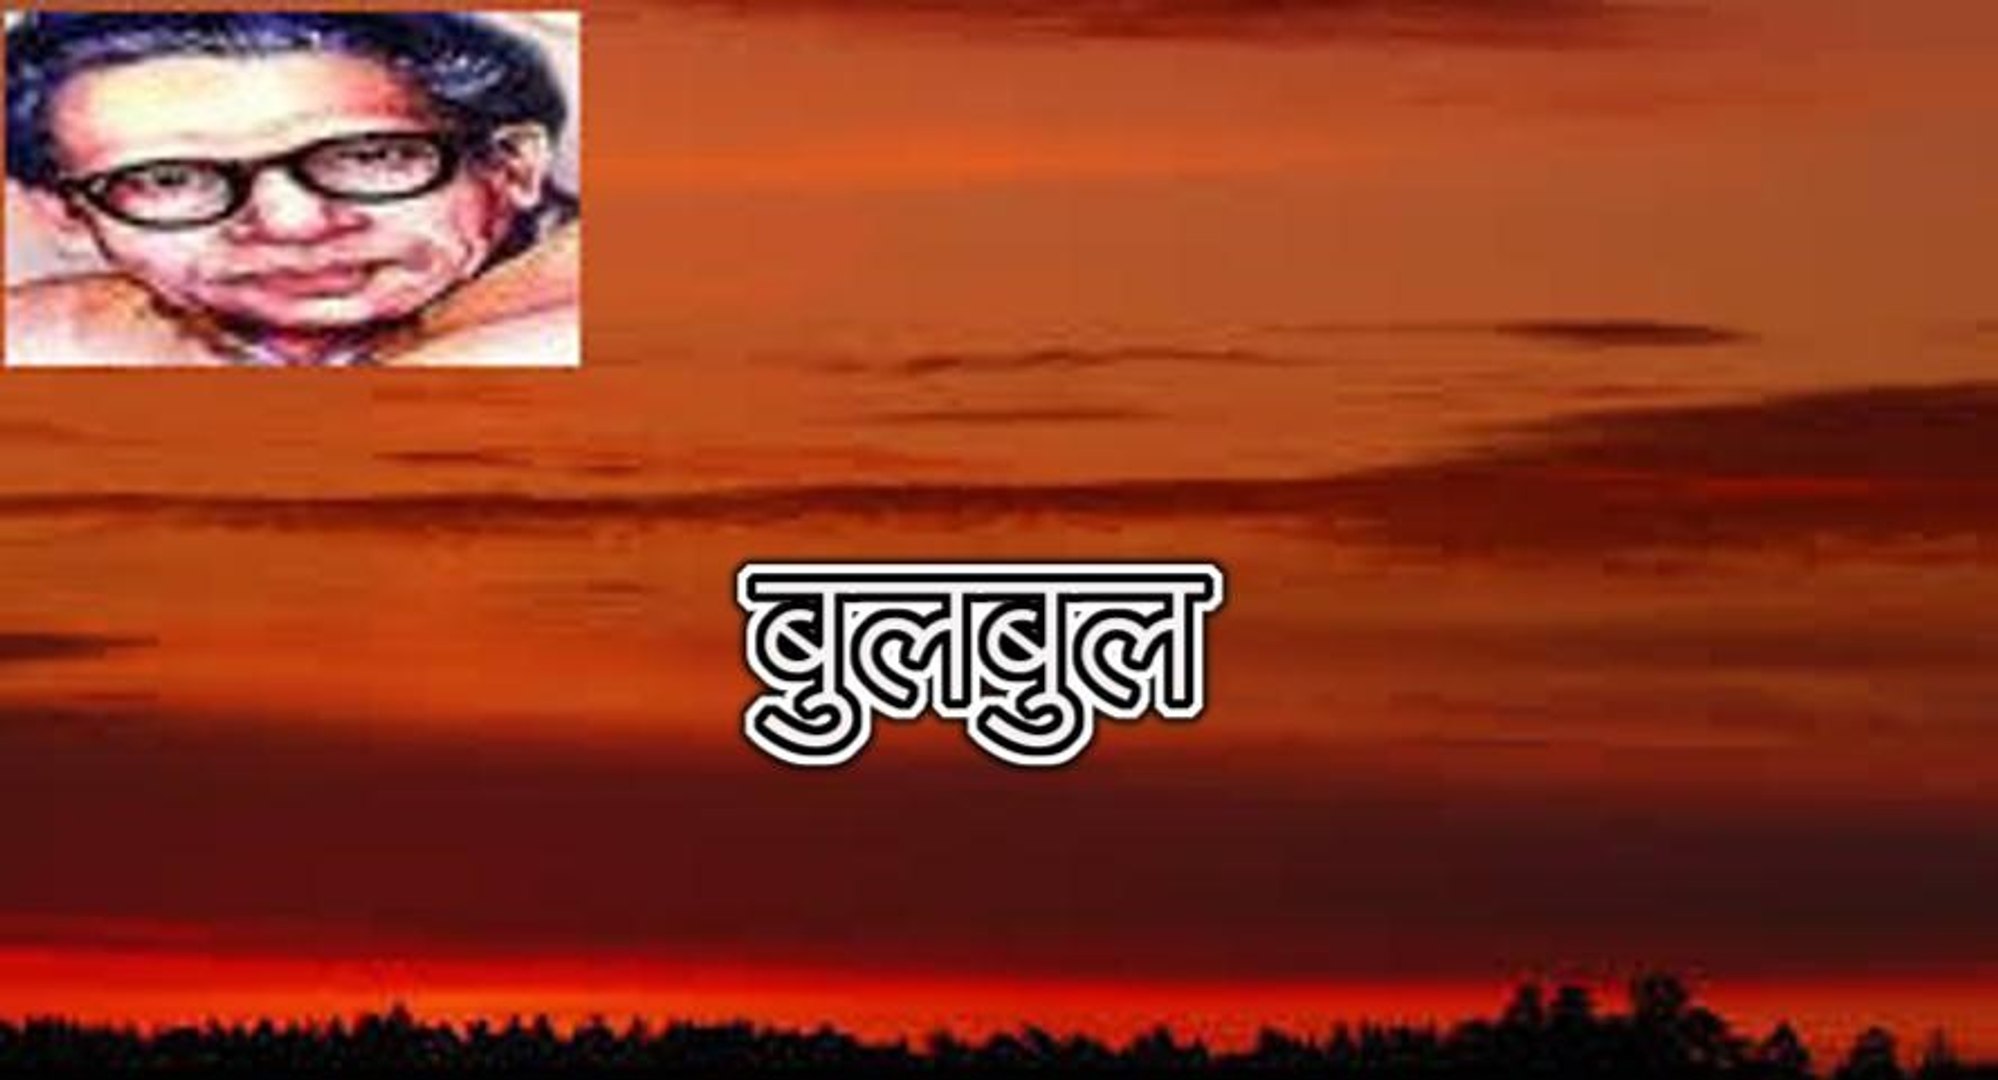 À¤¬ À¤²à¤¬ À¤² À¤¹à¤° À¤µ À¤¶ À¤° À¤¯ À¤¬à¤ À¤à¤¨ Harivansh Rai Bachchan Video Dailymotion A very lovely poem by harivansh rai bachchan ji, praised by my dear friend trilok and my friend's voice got sweeter. à¤¬ à¤²à¤¬ à¤² à¤¹à¤° à¤µ à¤¶ à¤° à¤¯ à¤¬à¤ à¤à¤¨ harivansh rai bachchan